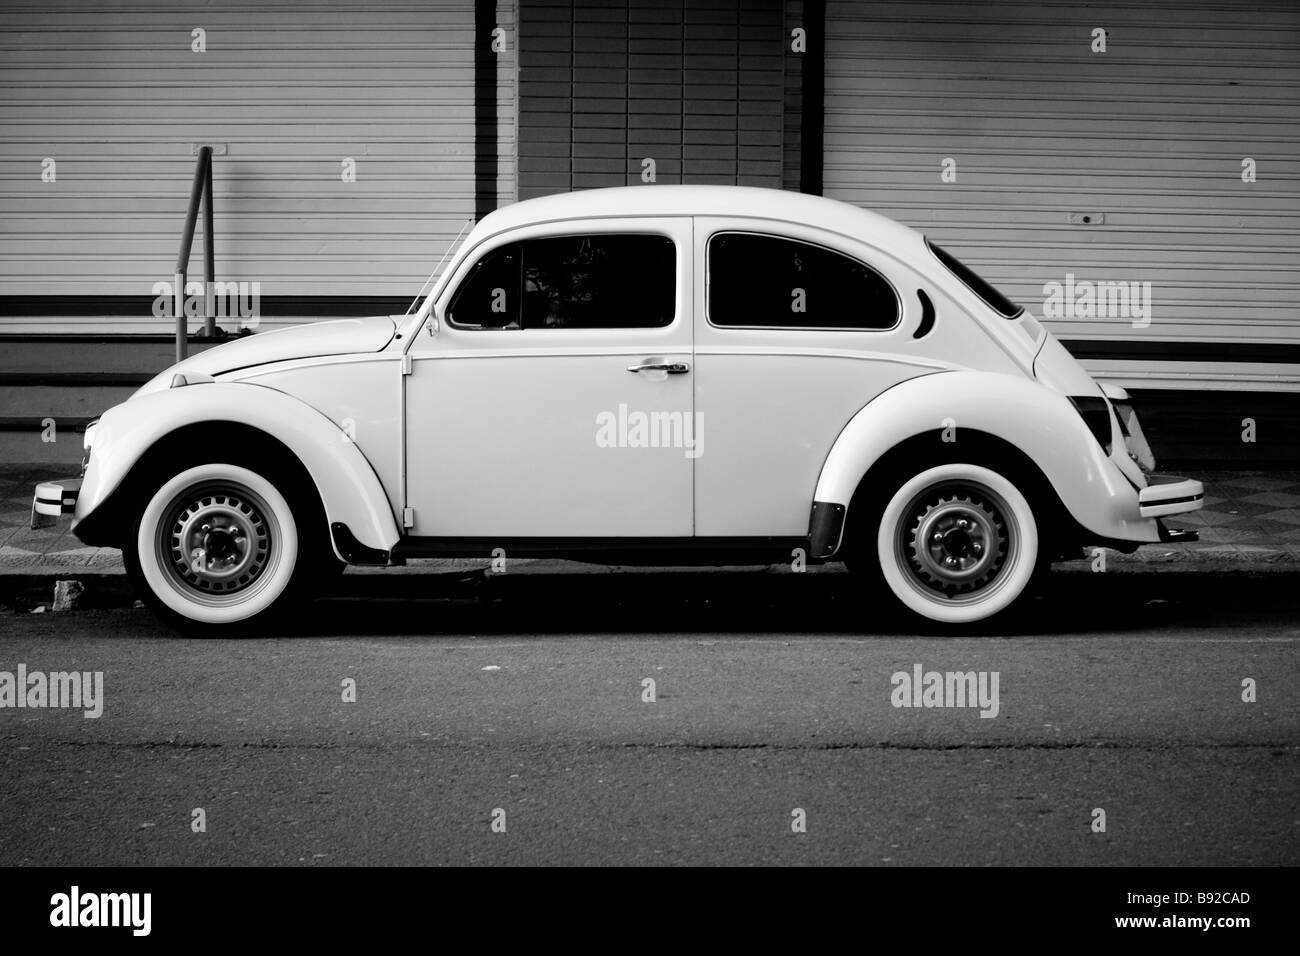 Vintage white volkwagen beetle avec pneus côté blanche garée dans la rue Banque D'Images